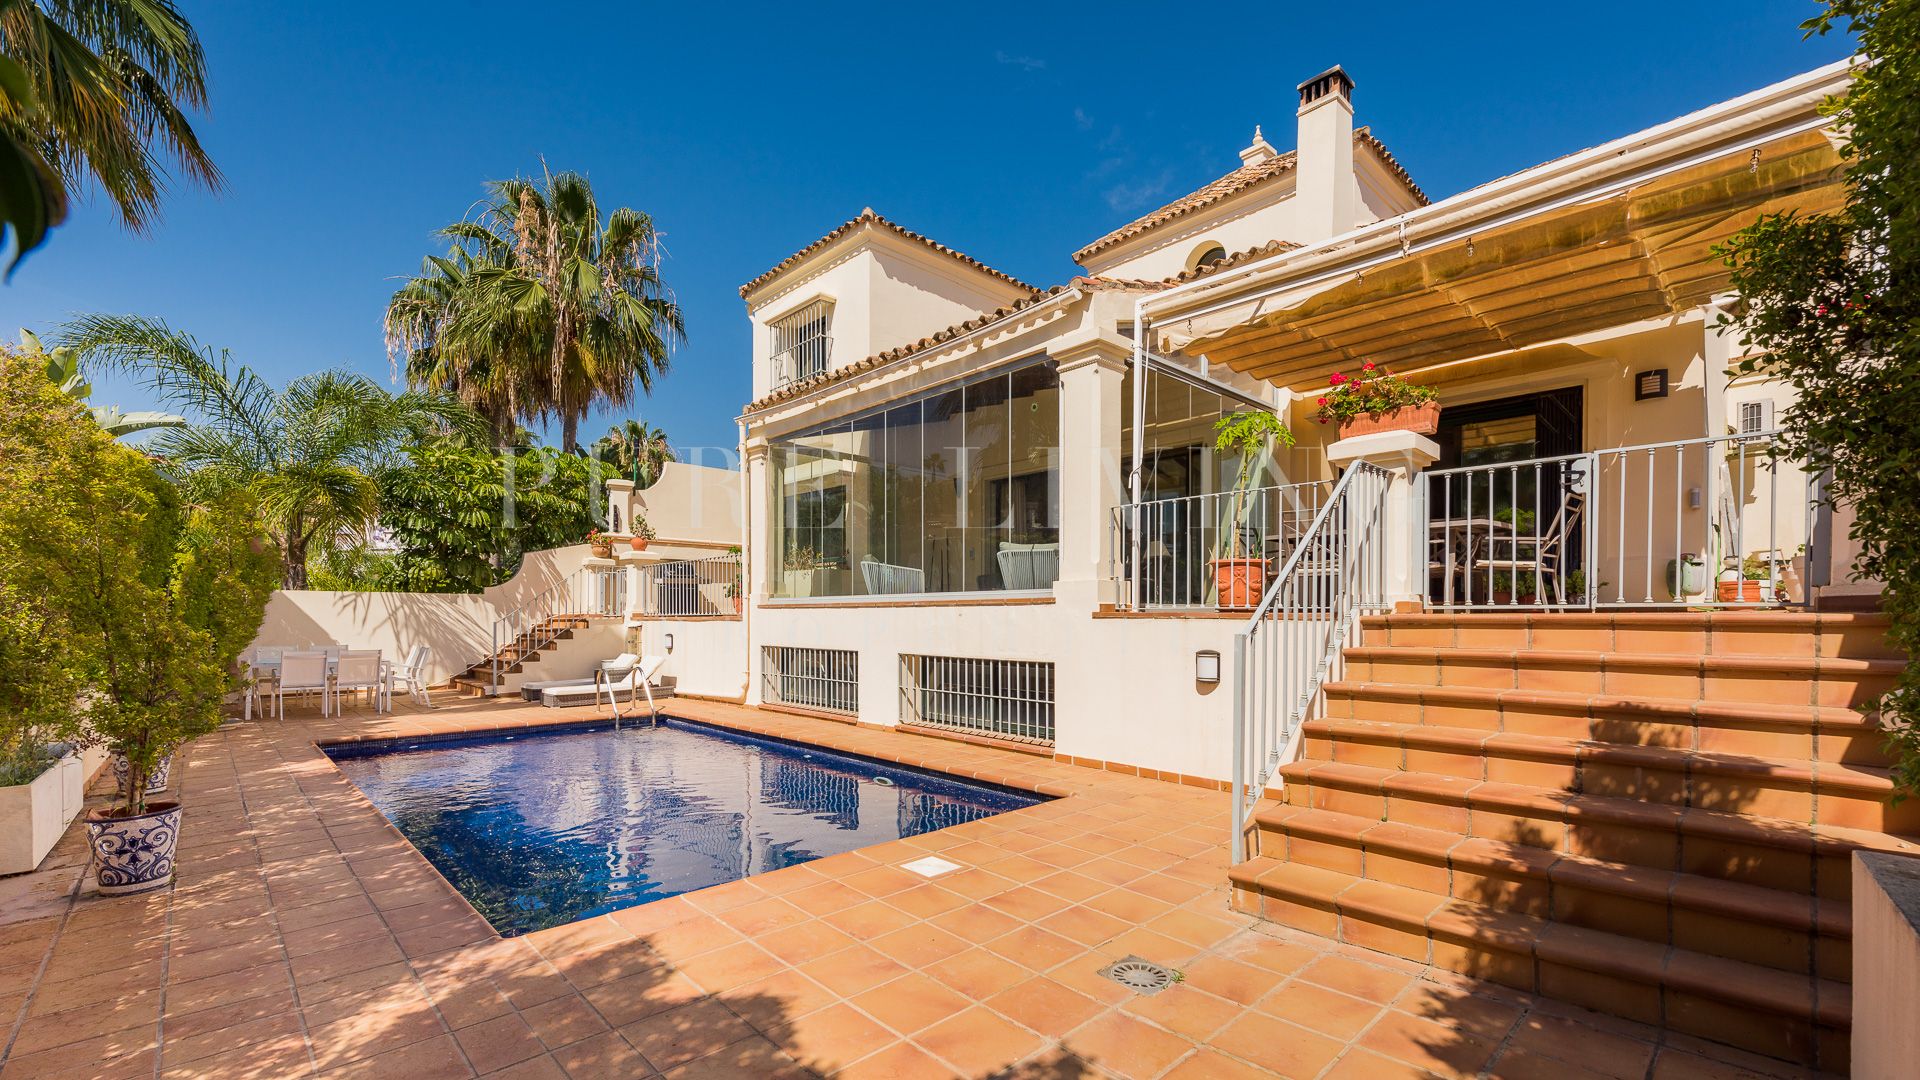 Excellente villa de quatre chambres située dans le quartier très recherché de Nueva Andalucía.